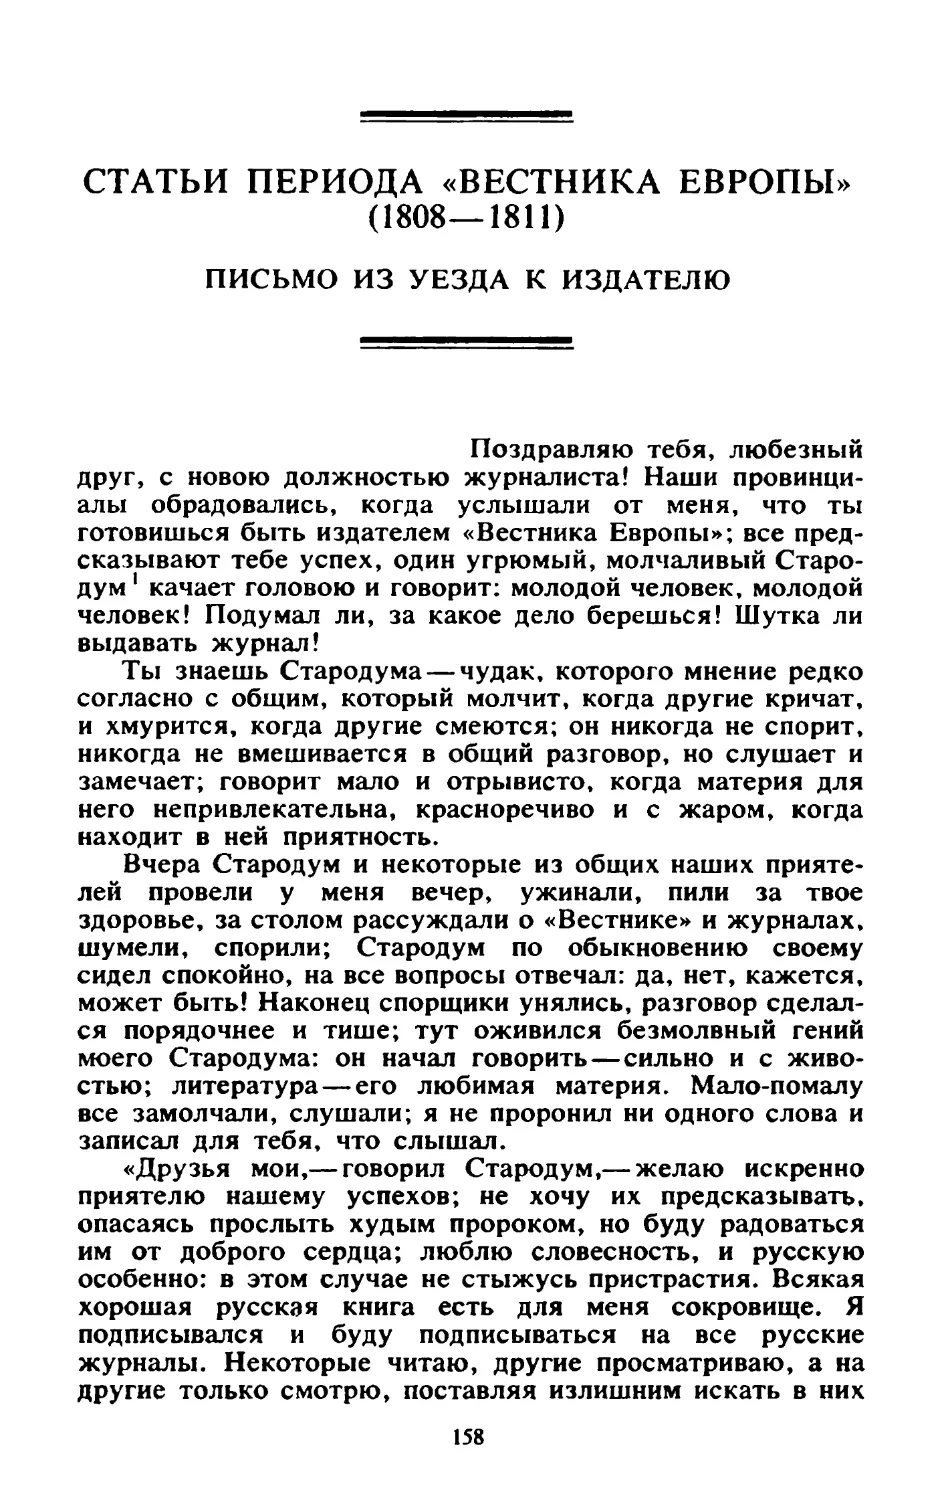 Статьи периода «Вестника Европы» (1808—1811)
Письмо из уезда к издателю